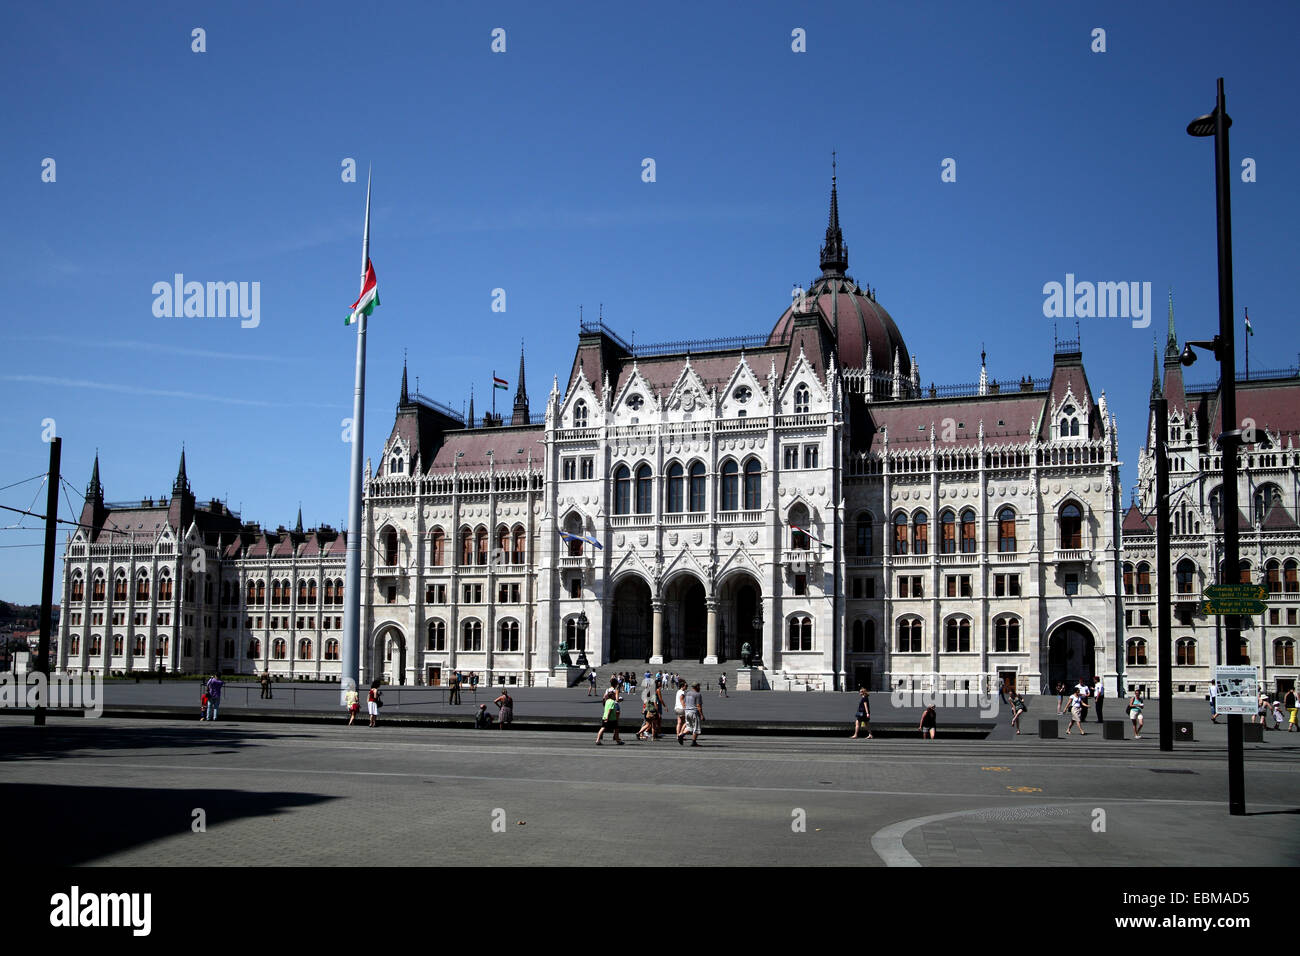 Vue paysage de l'arrière du bâtiment du parlement hongrois dans le centre de Pest Budapest Hongrie contre ciel bleu profond Banque D'Images